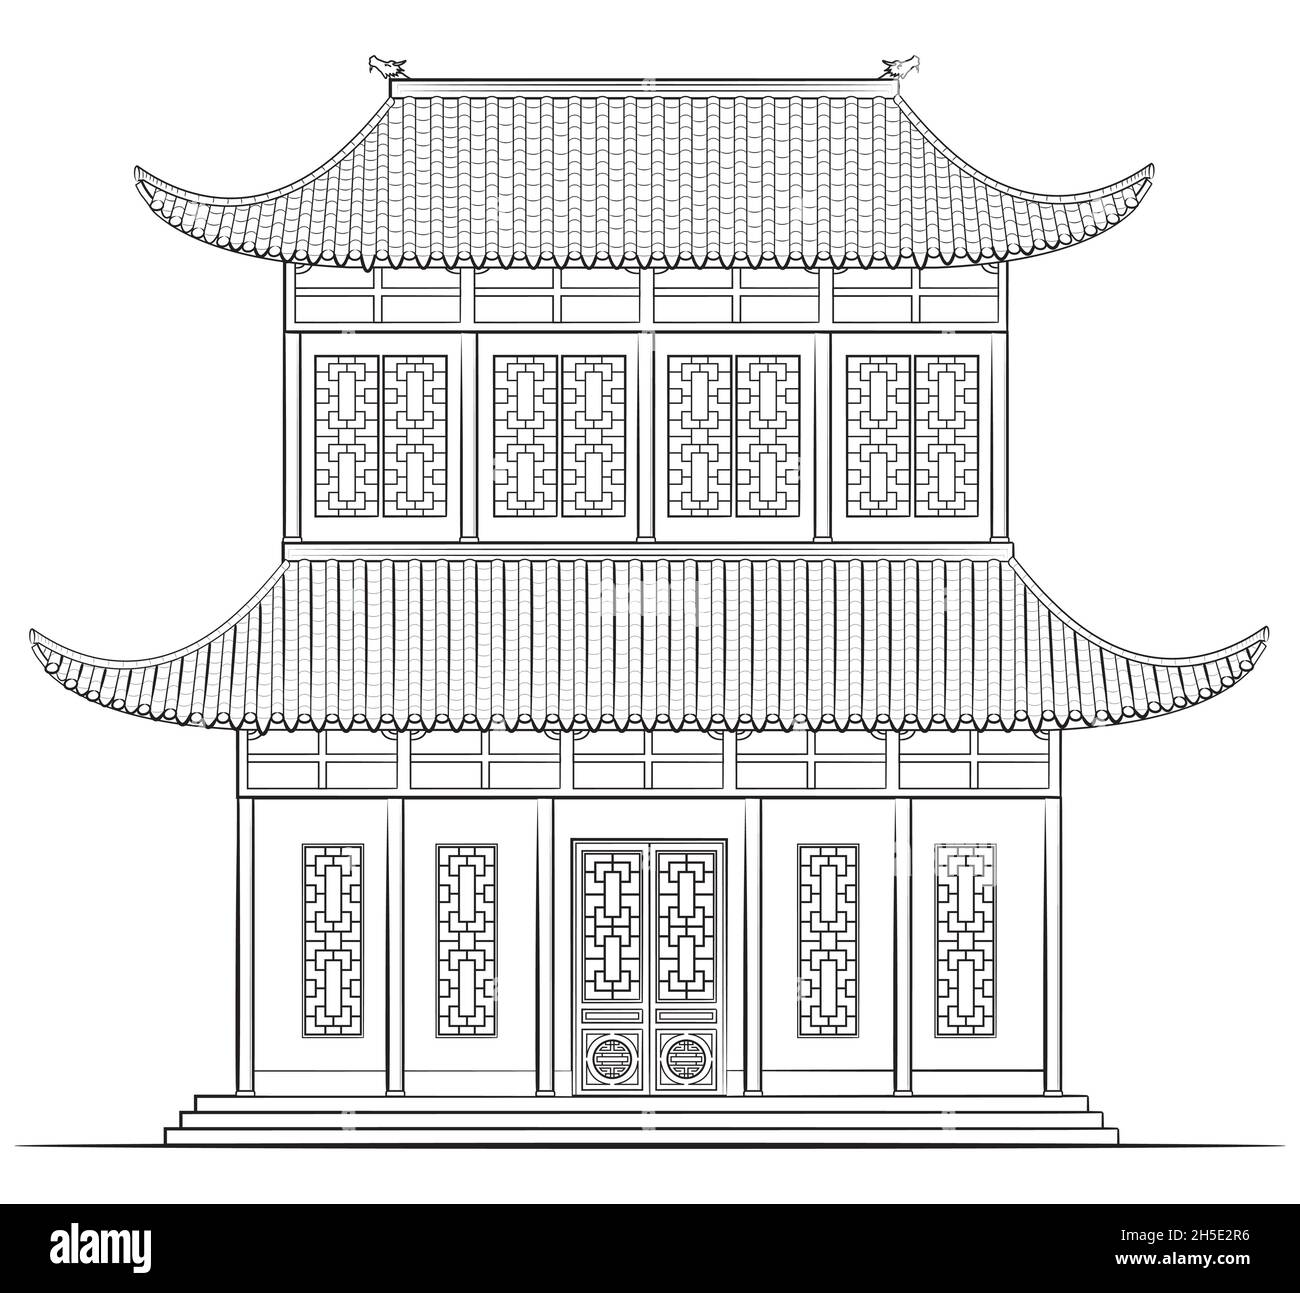 Dessin d'un bâtiment chinois classique - illustration en noir et blanc Illustration de Vecteur